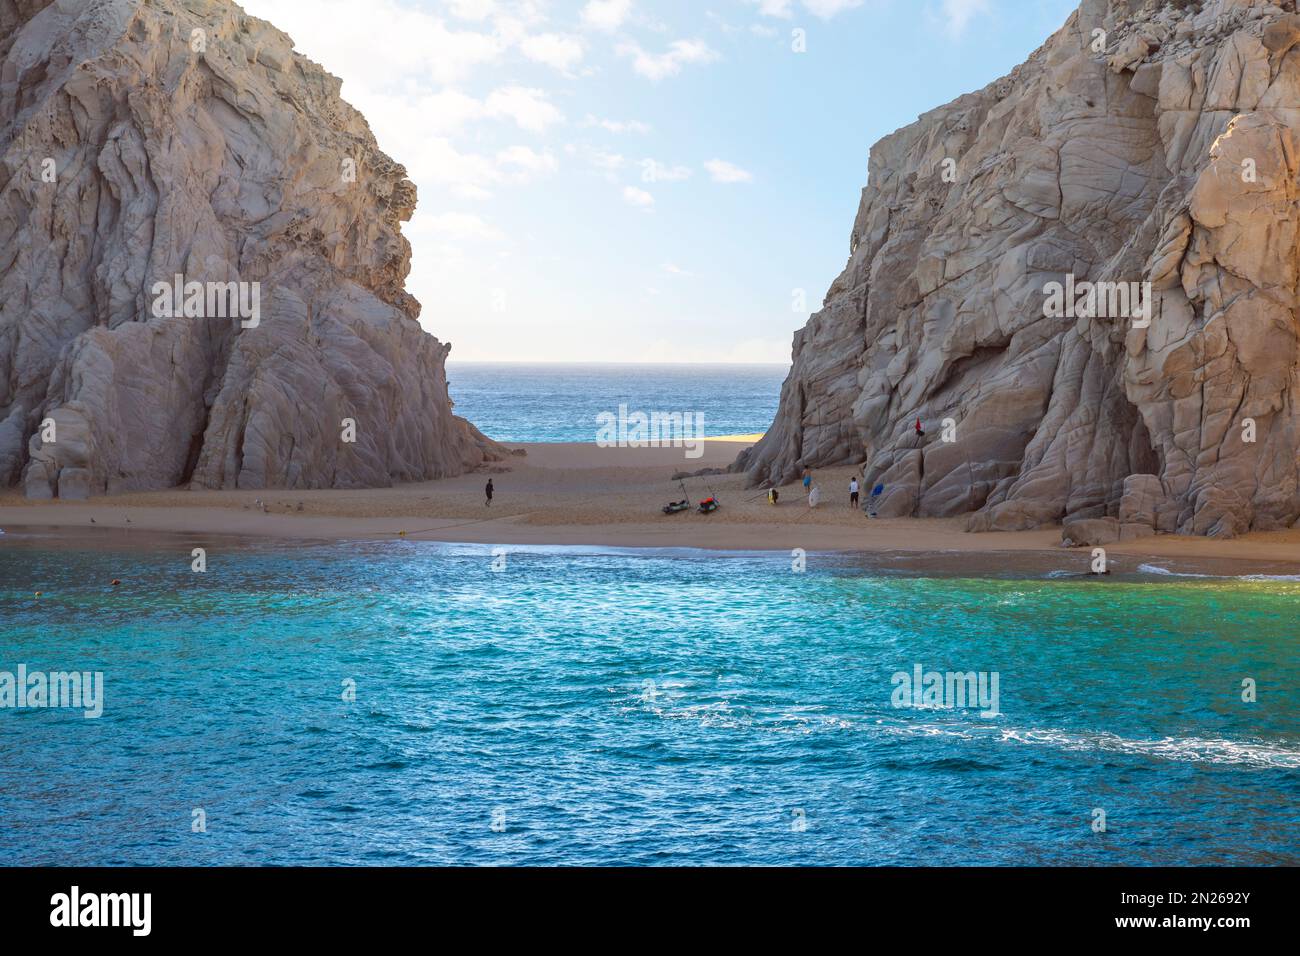 Lover's Beach et Plage de divorce à LANd's End El Arco formations rocheuses de la péninsule de Baja à Cabo San Lucas, Mexique. Banque D'Images